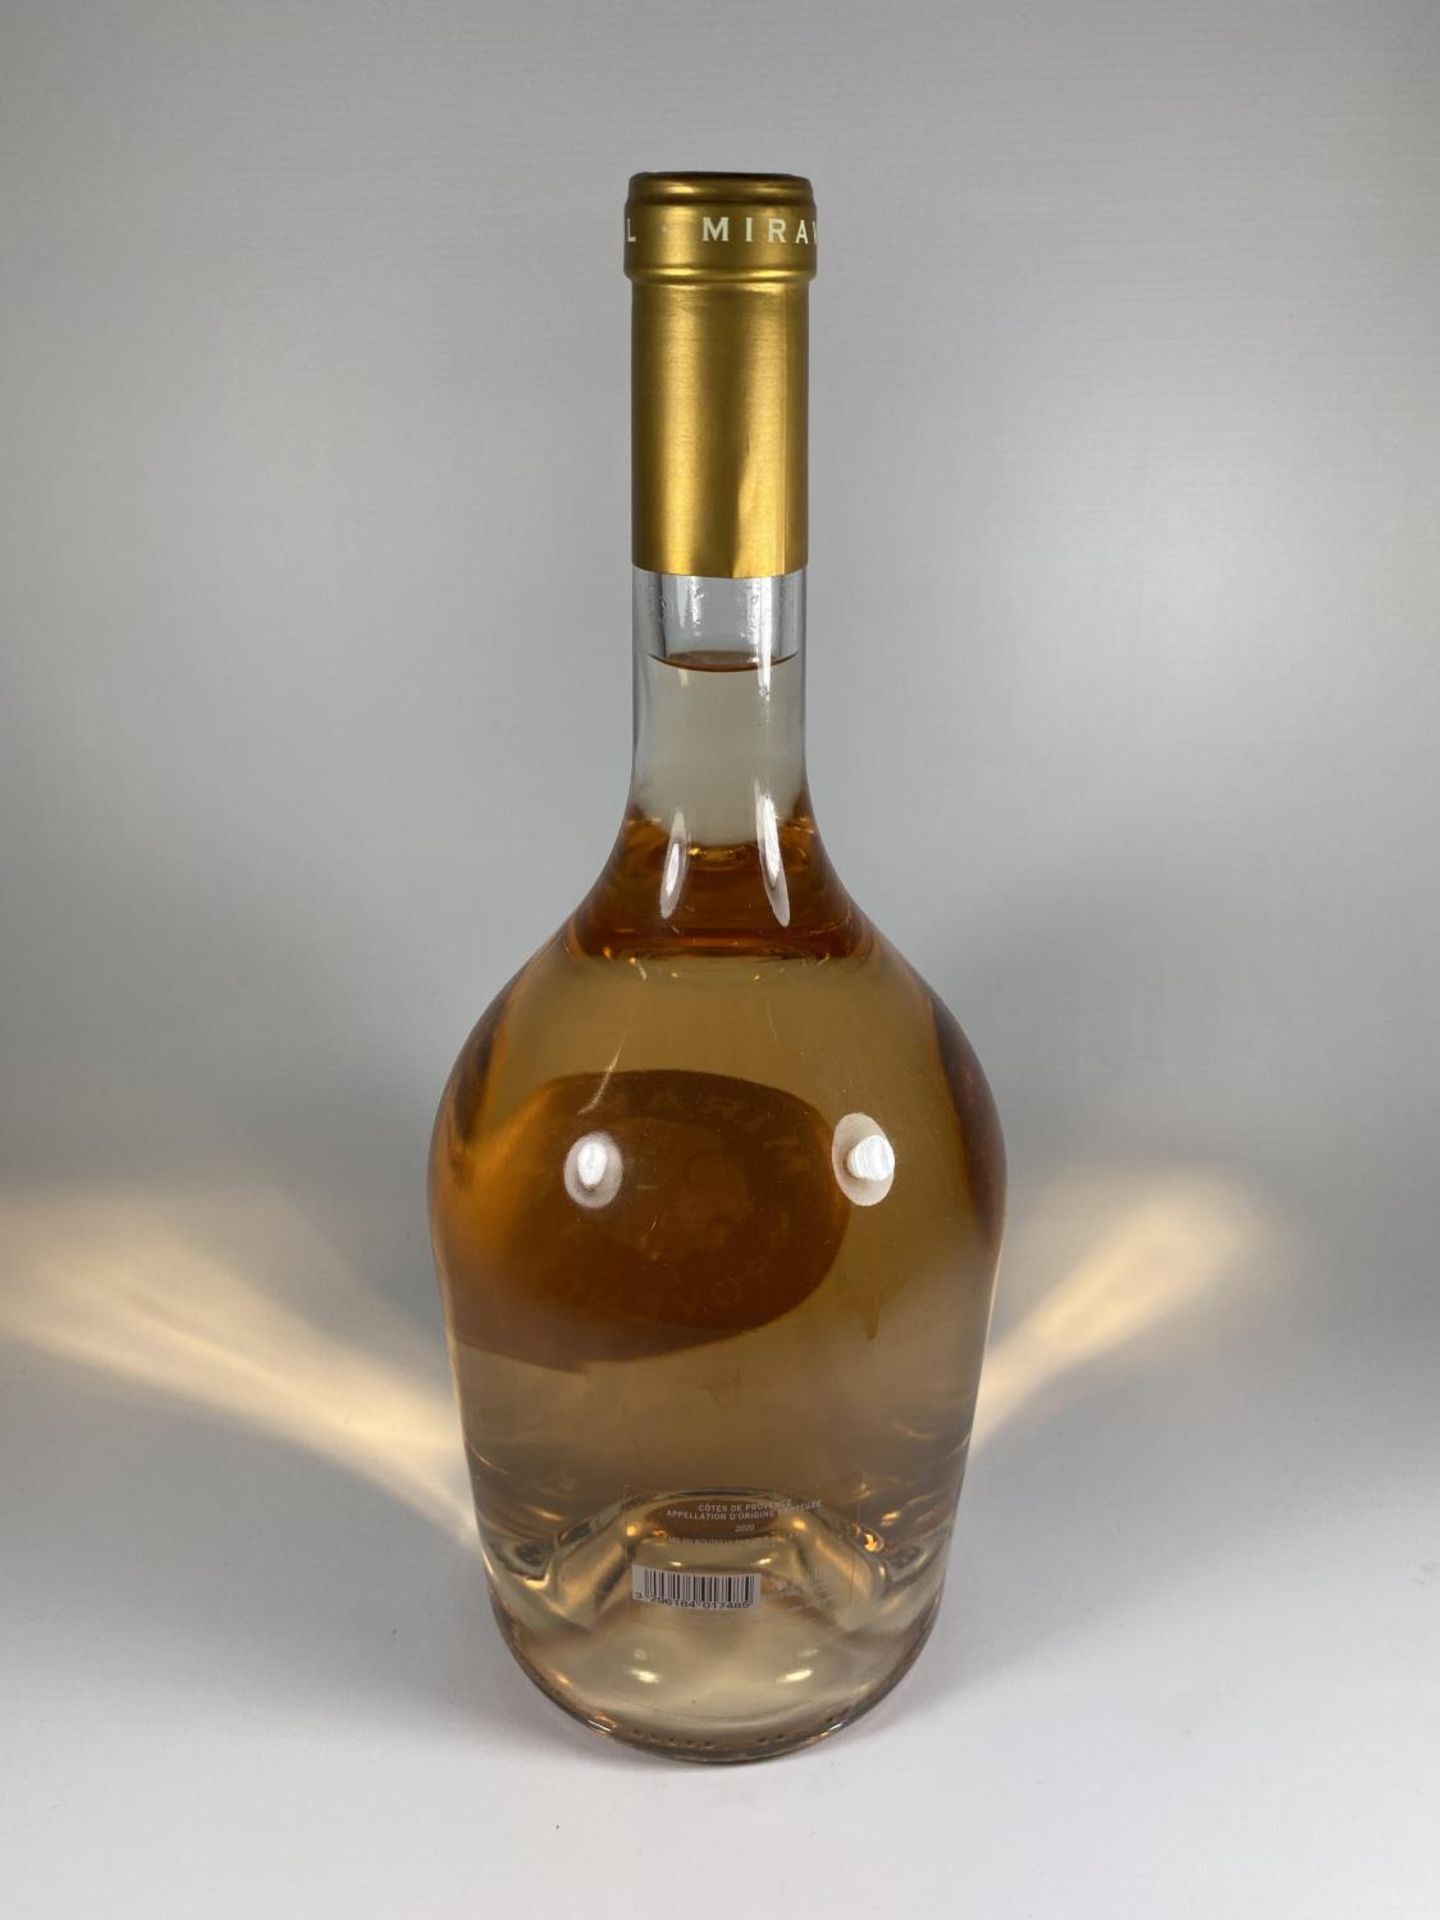 1 X 3L BOTTLE - MIRAVEL COTES DE PROVENCE ROSE WINE - Image 3 of 4